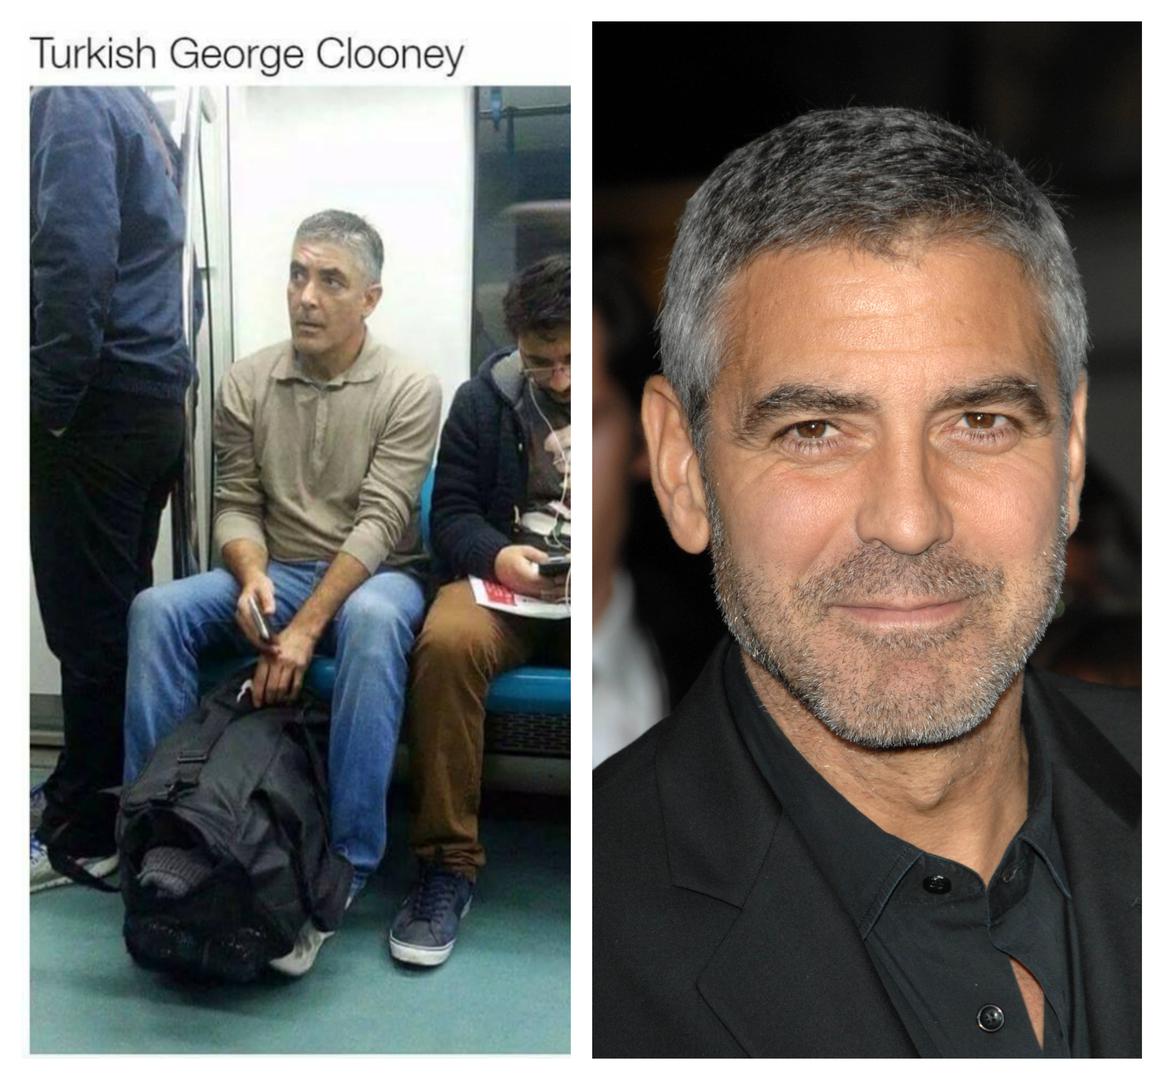 Turski George Clooney